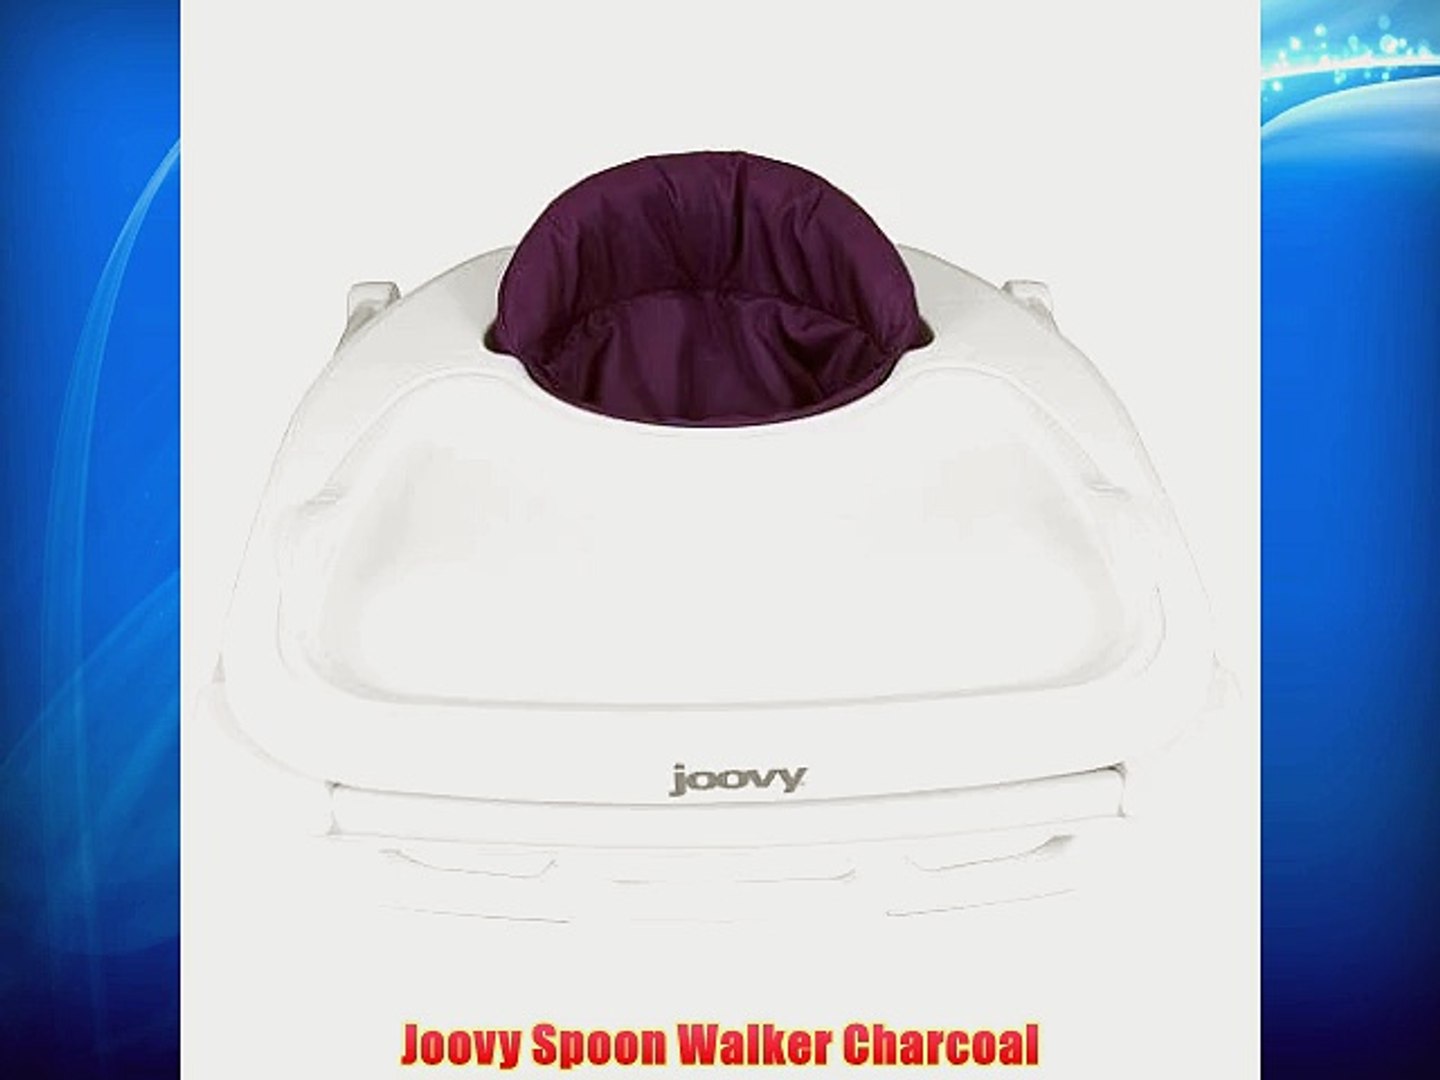 joovy spoon walker charcoal